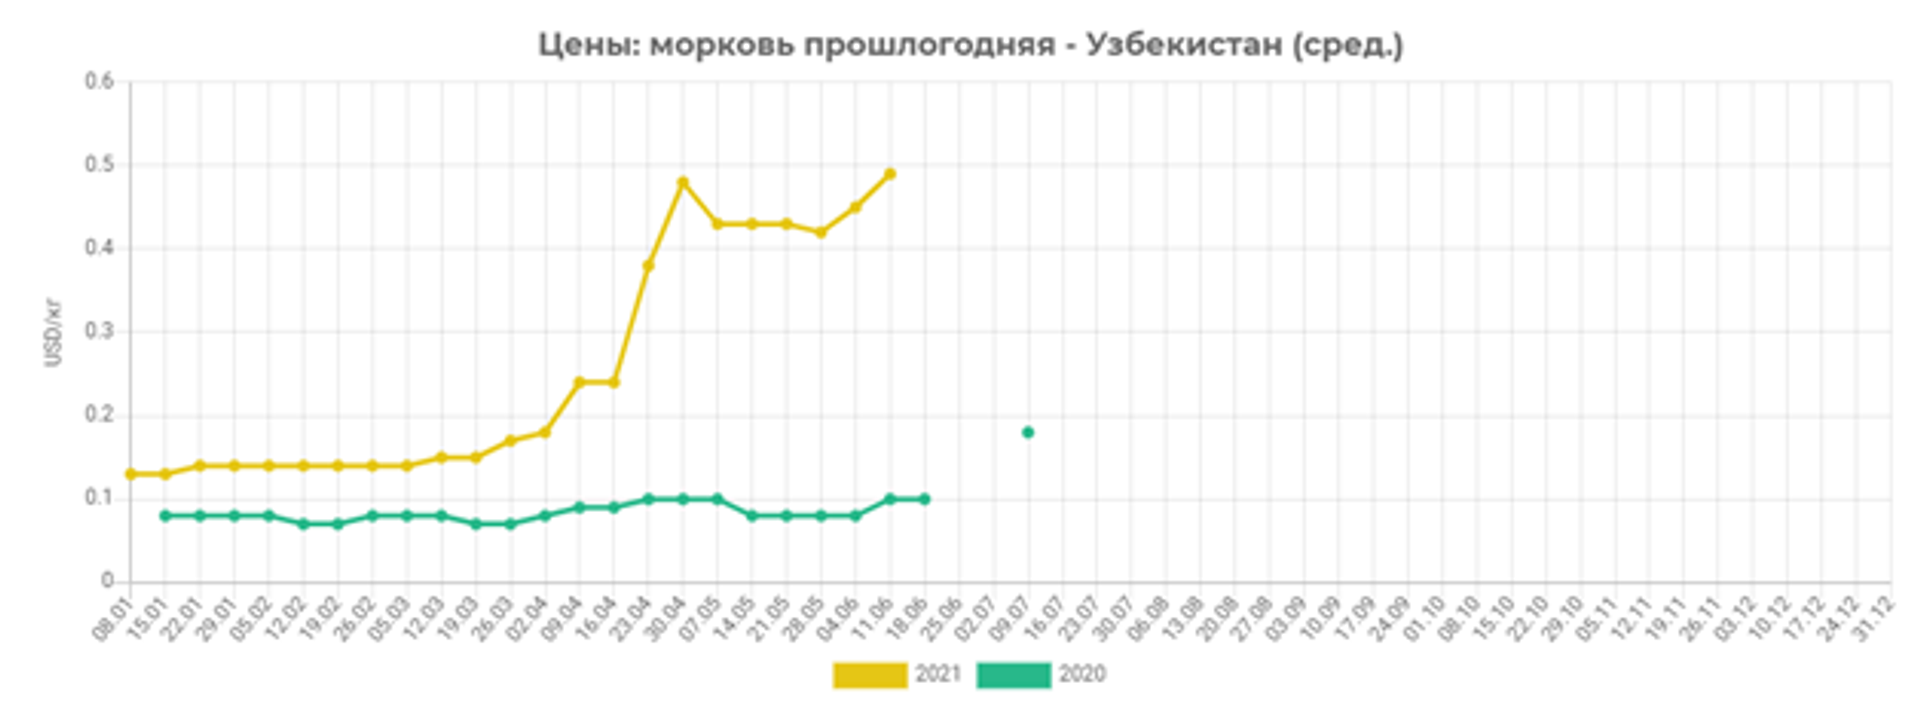 Динамика оптовых цен на морковь прошлогоднего урожая в 2020 и 2021 году - Sputnik Узбекистан, 1920, 20.06.2021